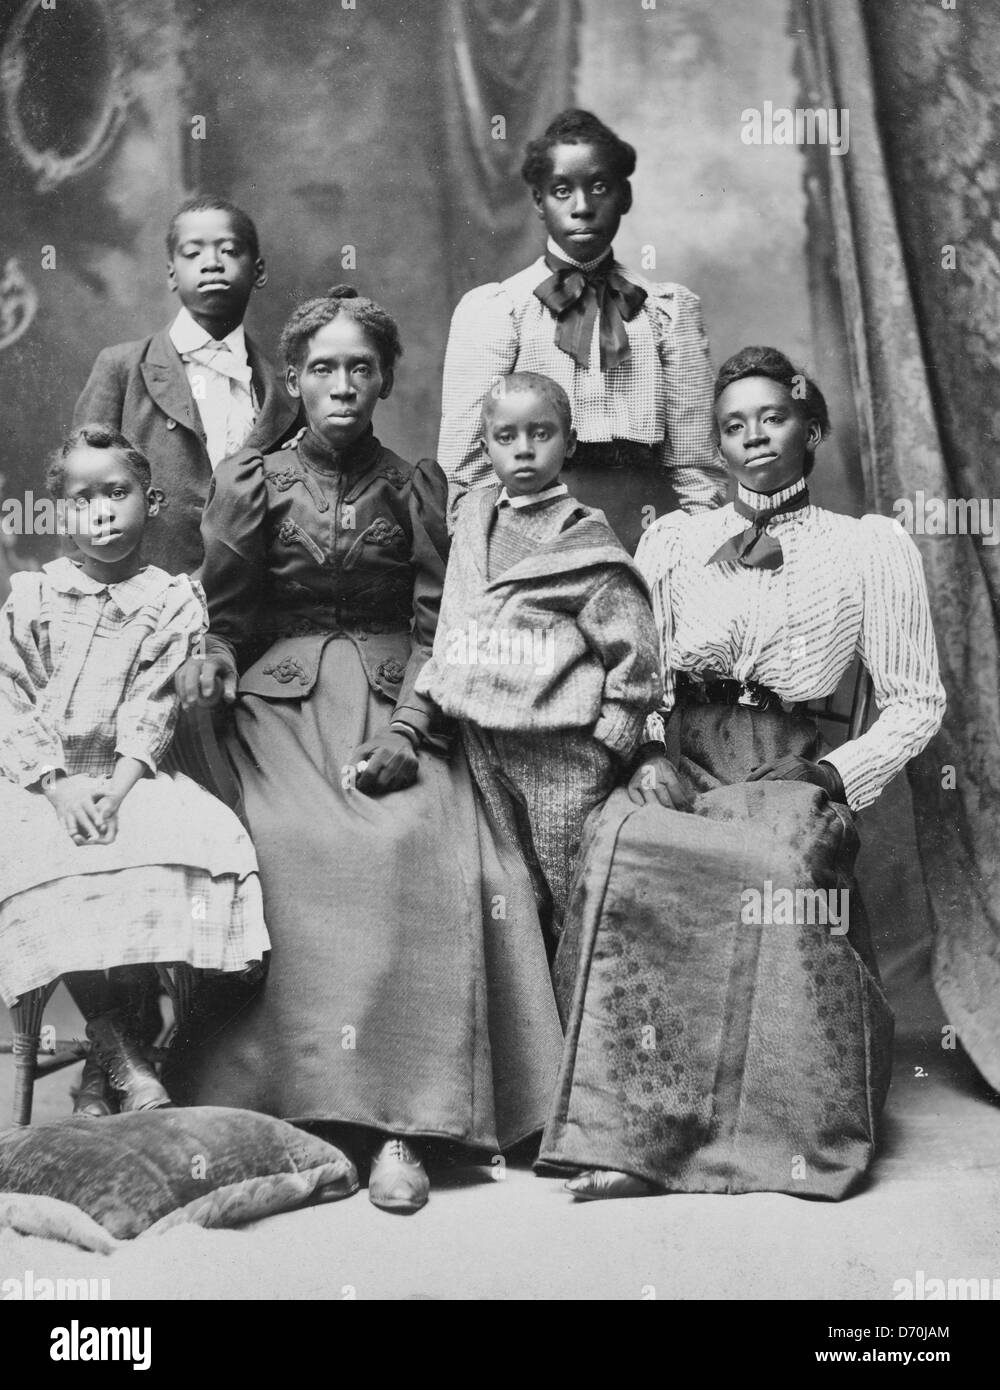 Mme Frazer Baker et enfants Famille de l'assassiné maître de poste à Lake City, Caroline du Sud - Lavinia Baker et ses cinq enfants survivants après le lynchage de son mari et son bébé le 22 février 1898. Banque D'Images